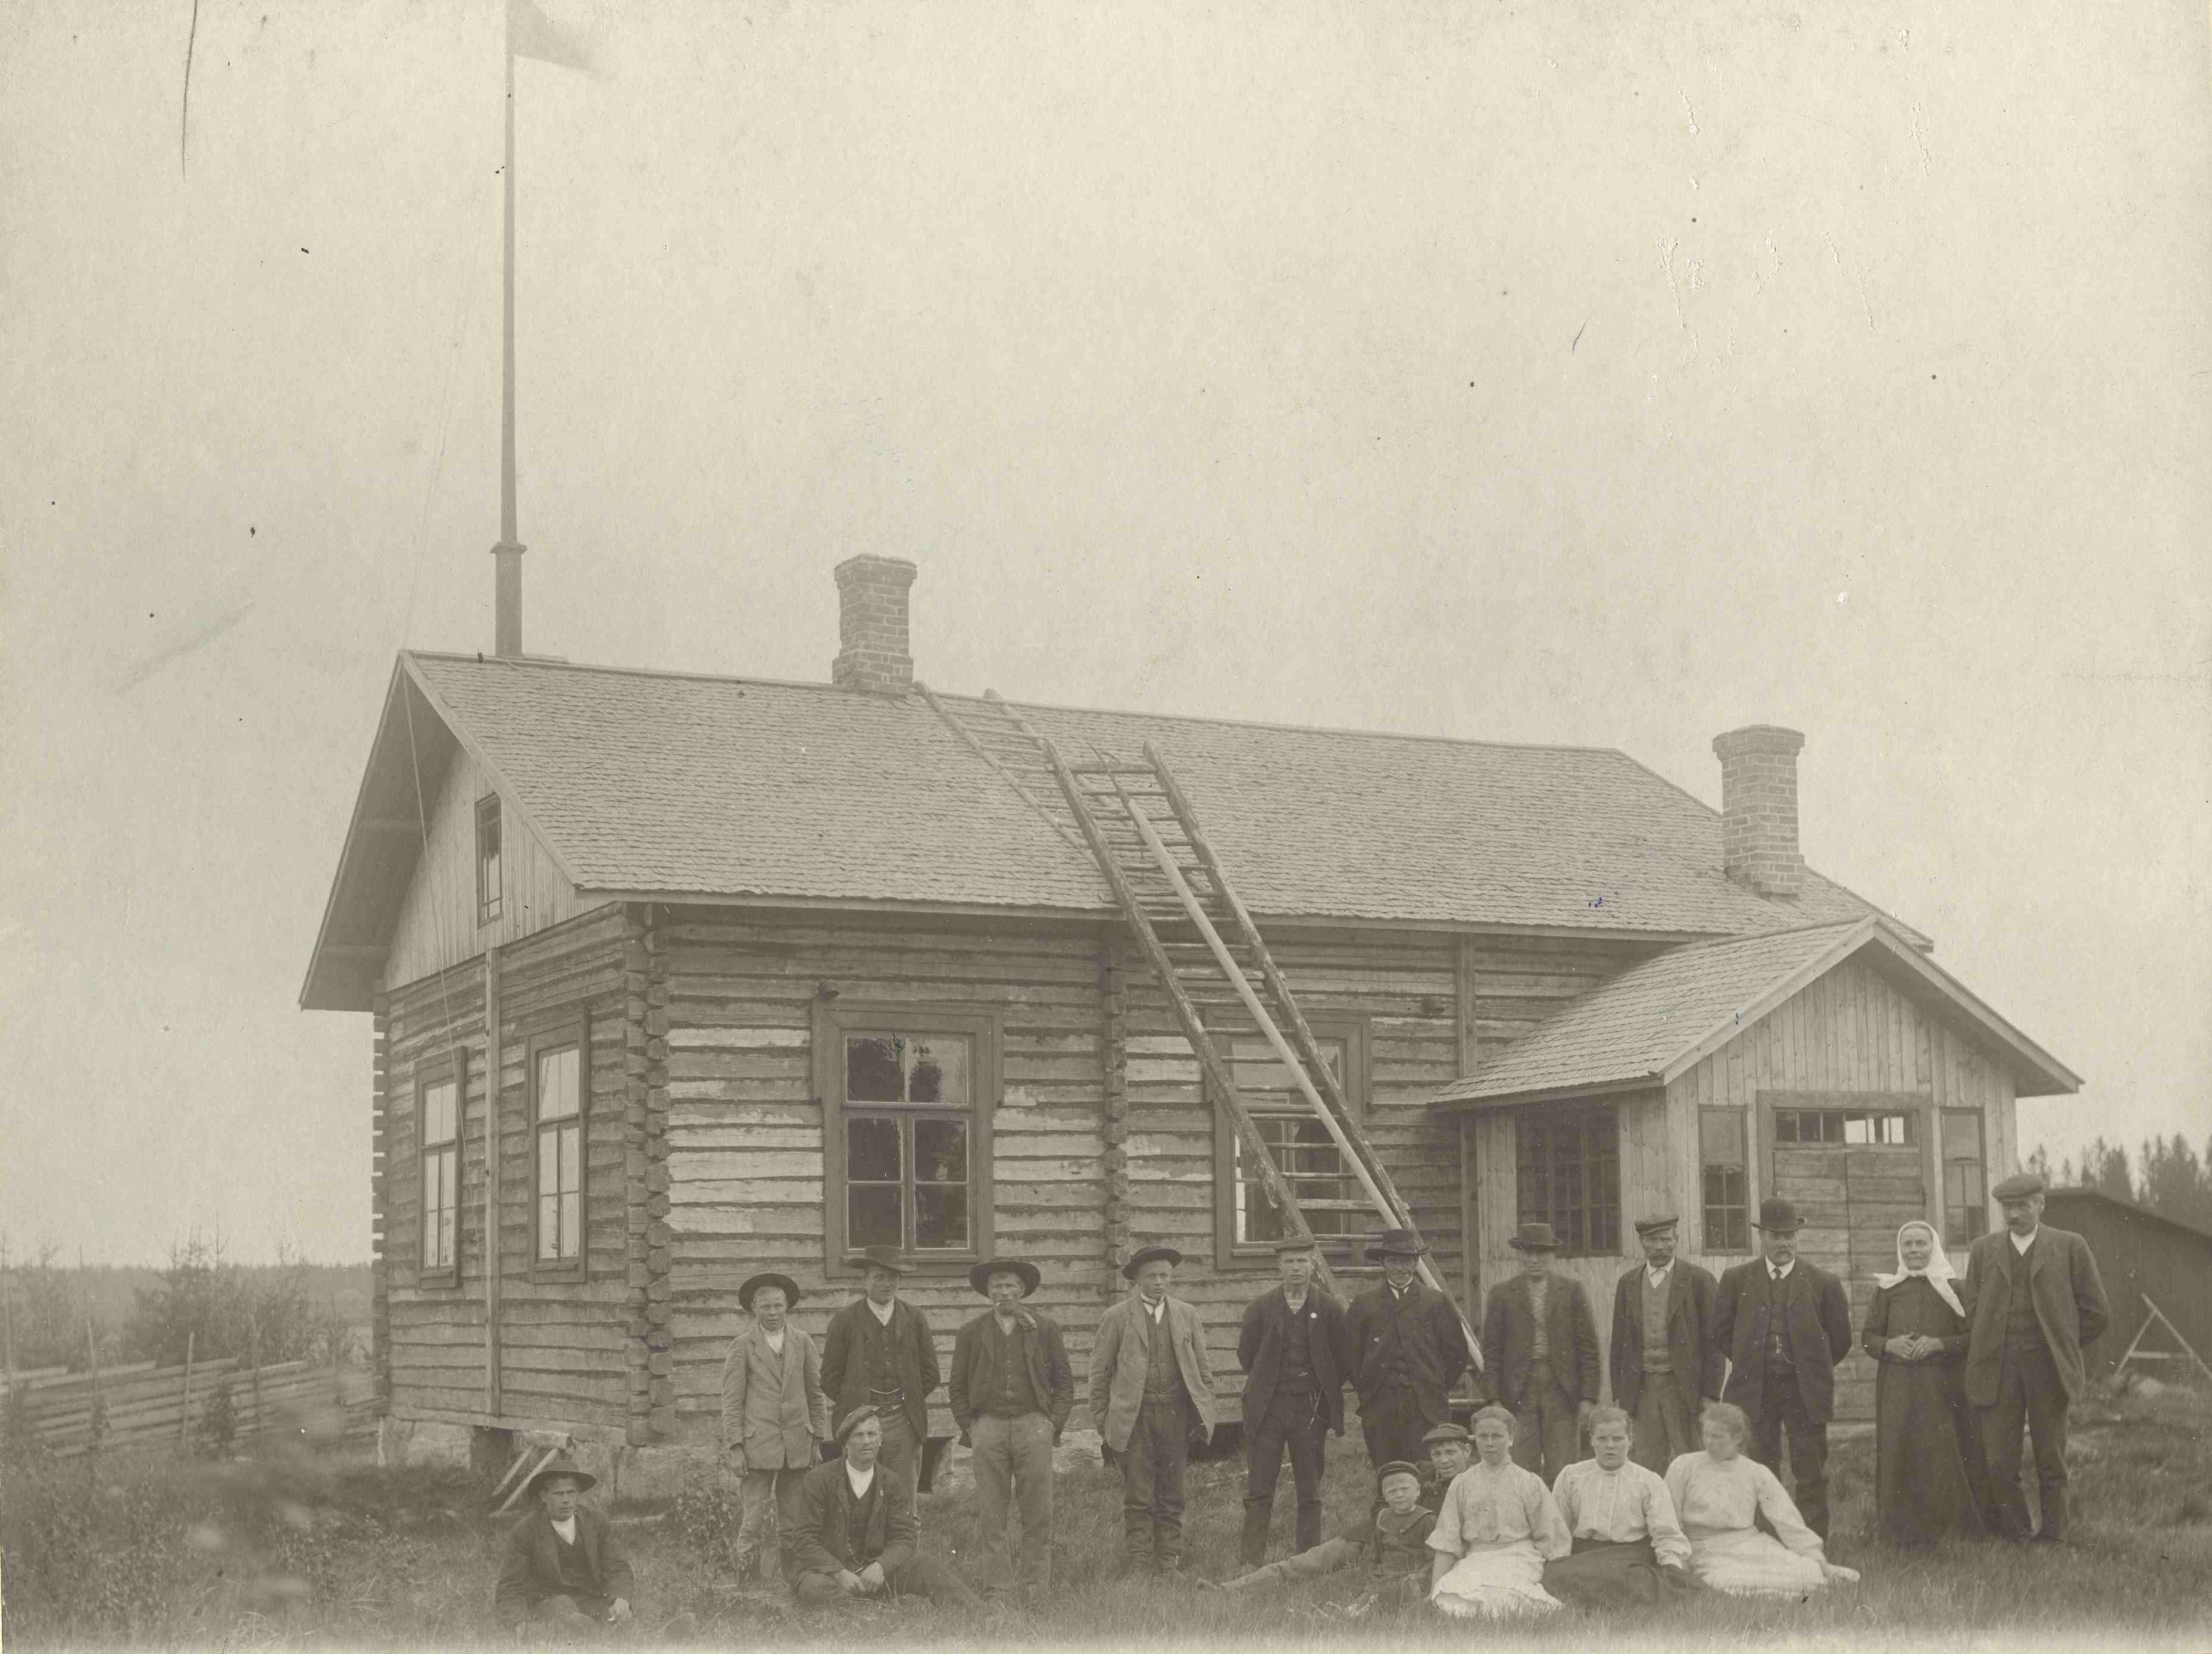 Huittisten Loimankylän työväenyhdistyksen jäseniä talonsa edustalla noin vuonna 1910. (Leppänen, Lauttakylä / Työväen Arkisto)